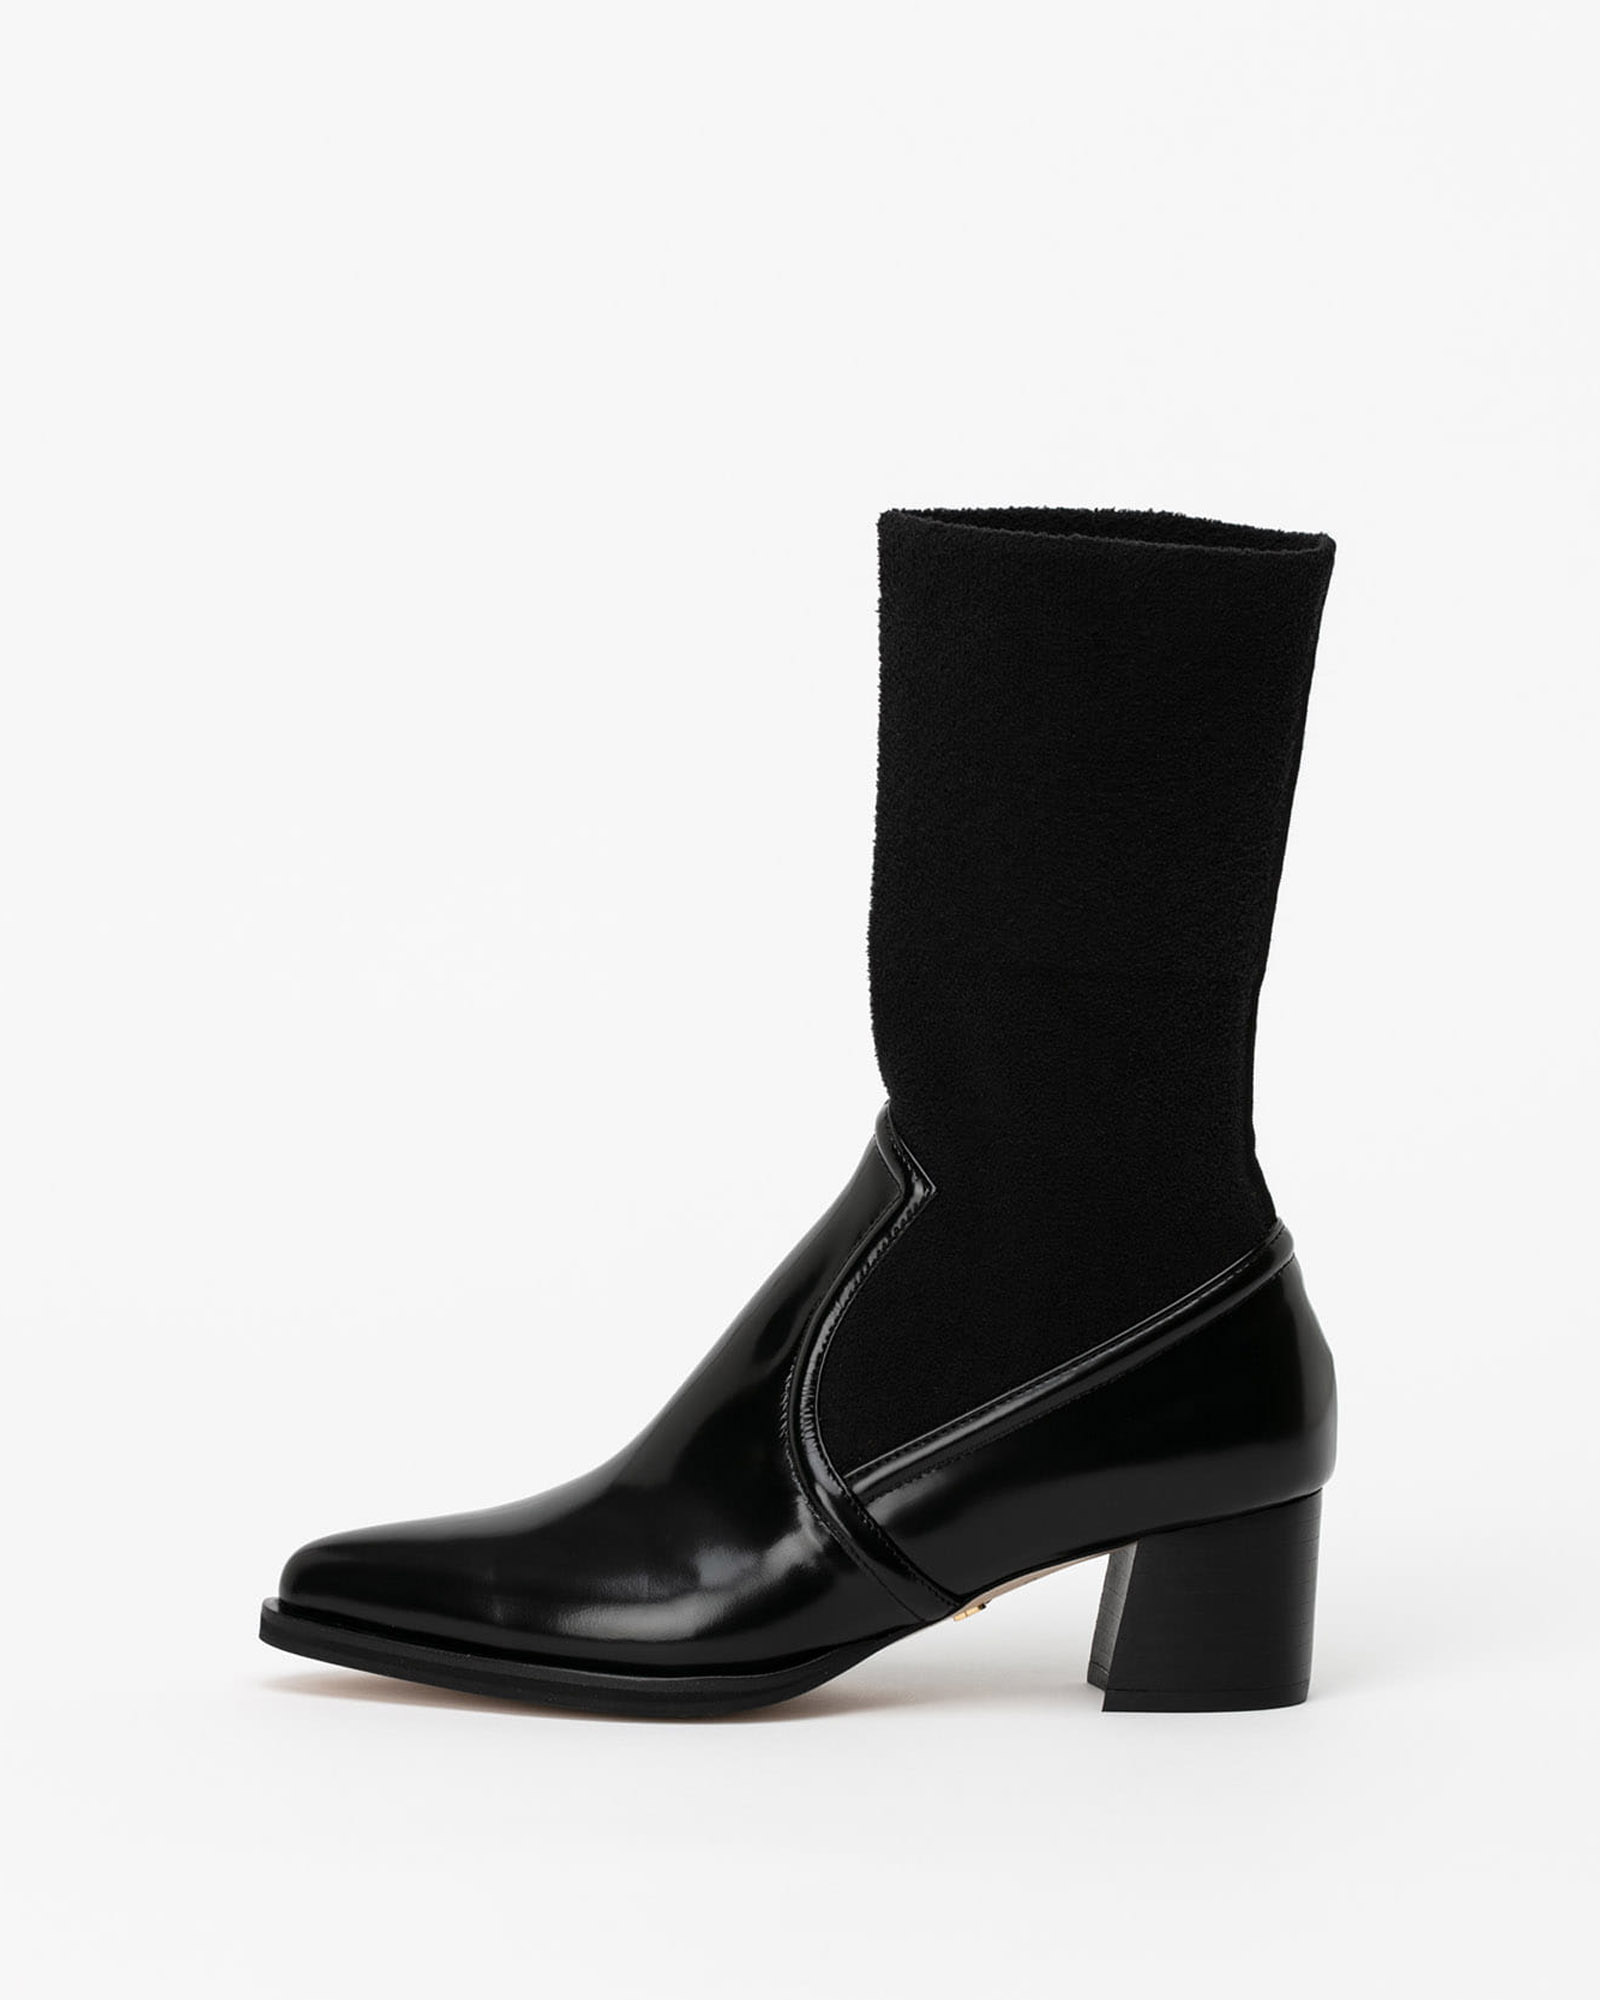 Verdi Socks Boots in Black Box